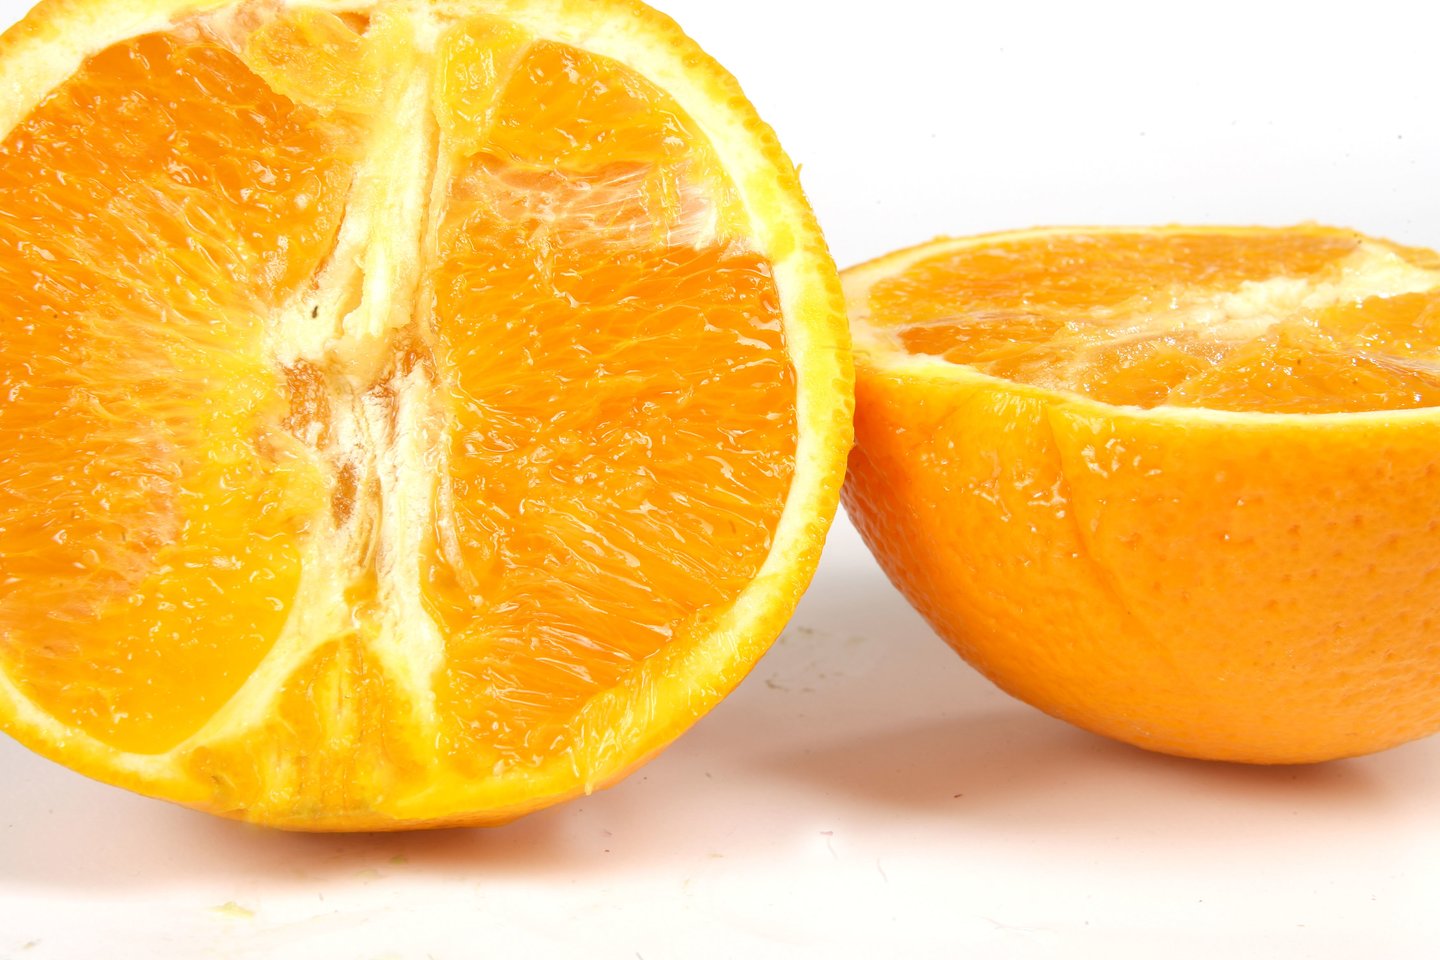 Iš apelsino žievelės galima pagaminti natūralią kvapią plovimo priemonę.<br>AP nuotr.